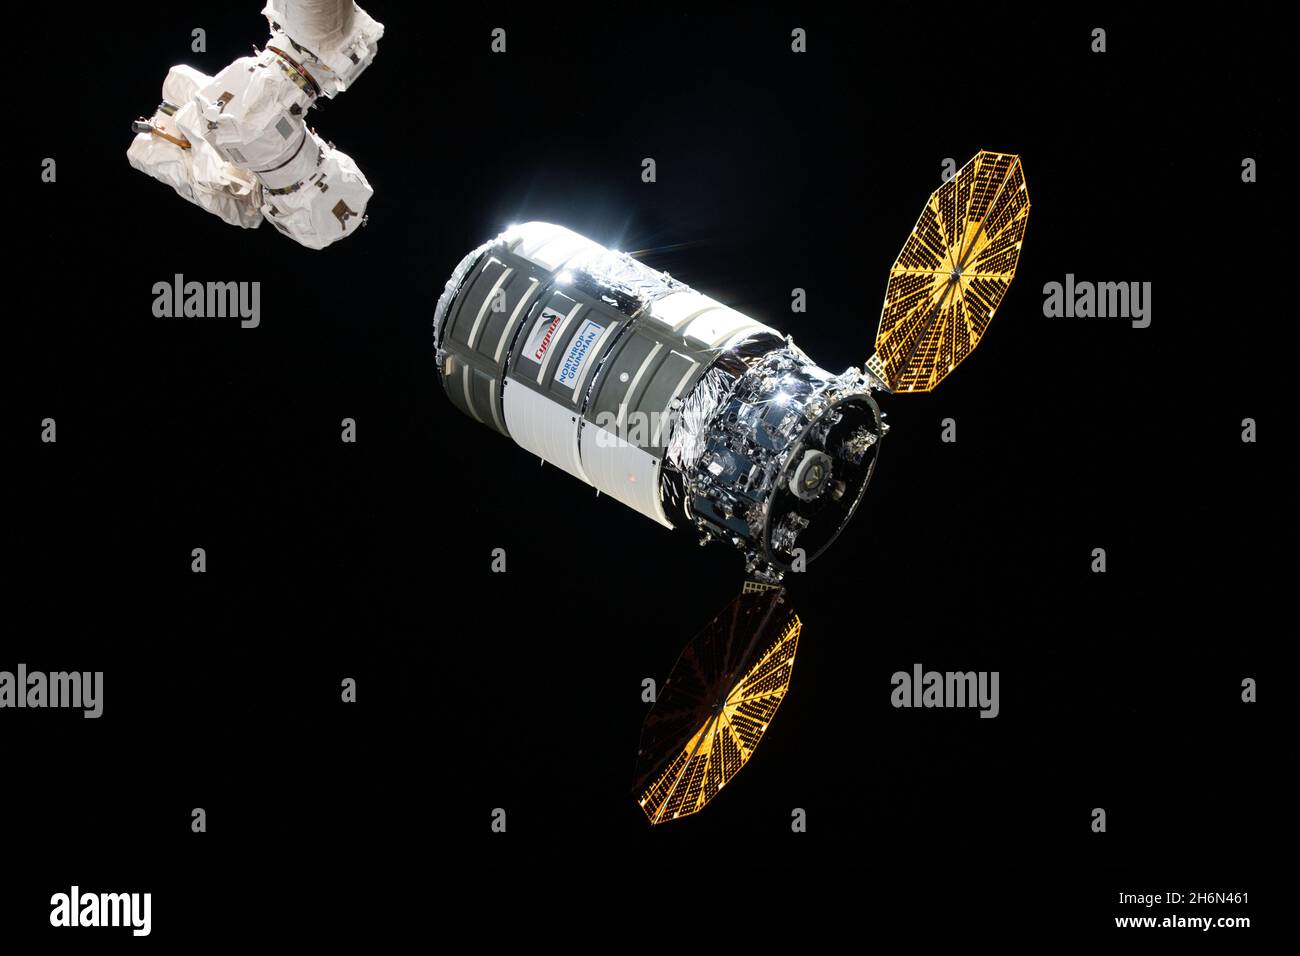 Cygnus llega a la Estación Espacial Internacional (ISS) el 12 de agosto de 2021, tras un lanzamiento dos días antes en un cohete Northrop Grumman Antares desde la instalación de vuelo Wallops de la NASA en la Isla Wallops, Virginia. Es la misión comercial de 16th servicios de reabastecimiento de la compañía a la estación espacial de la NASA. Northrop Grumman nombró a la nave espacial en honor a la astronauta de la NASA Ellison Onizuka, el primer astronauta asiático-americano. Cygnus deorbitará el miércoles, 15 de diciembre de 2021, después de un motor de deórbita que dispara para establecer una reentrada destructiva en la que la nave espacial, llena de desechos de la estación espacial cr Foto de stock